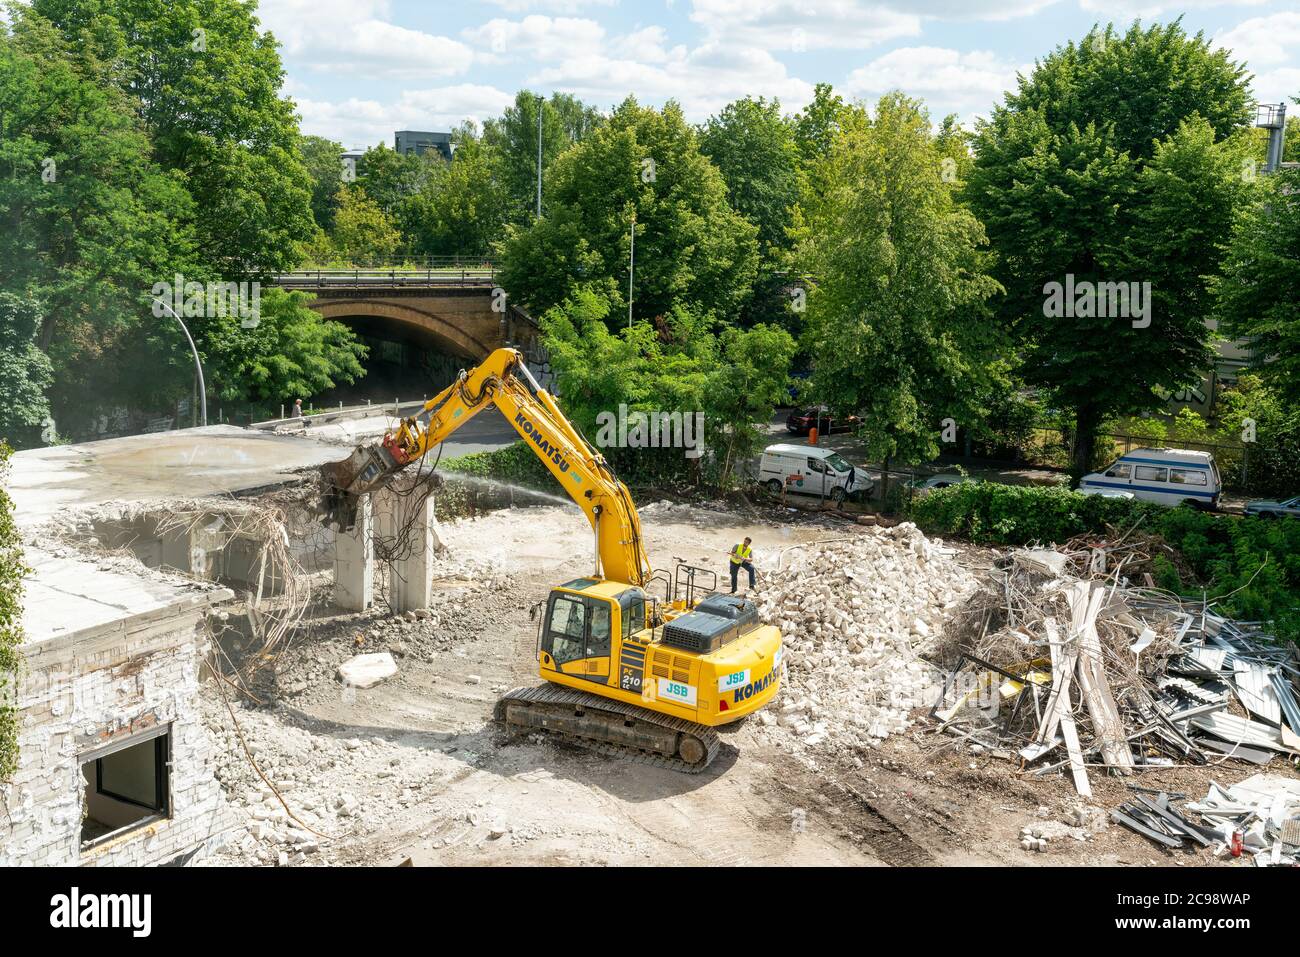 Berlin, Deutschland - 13. juli 2020: Eine Baustelle in Berlin mit einem gelben Bagger, der ein Haus abriss Stockfoto